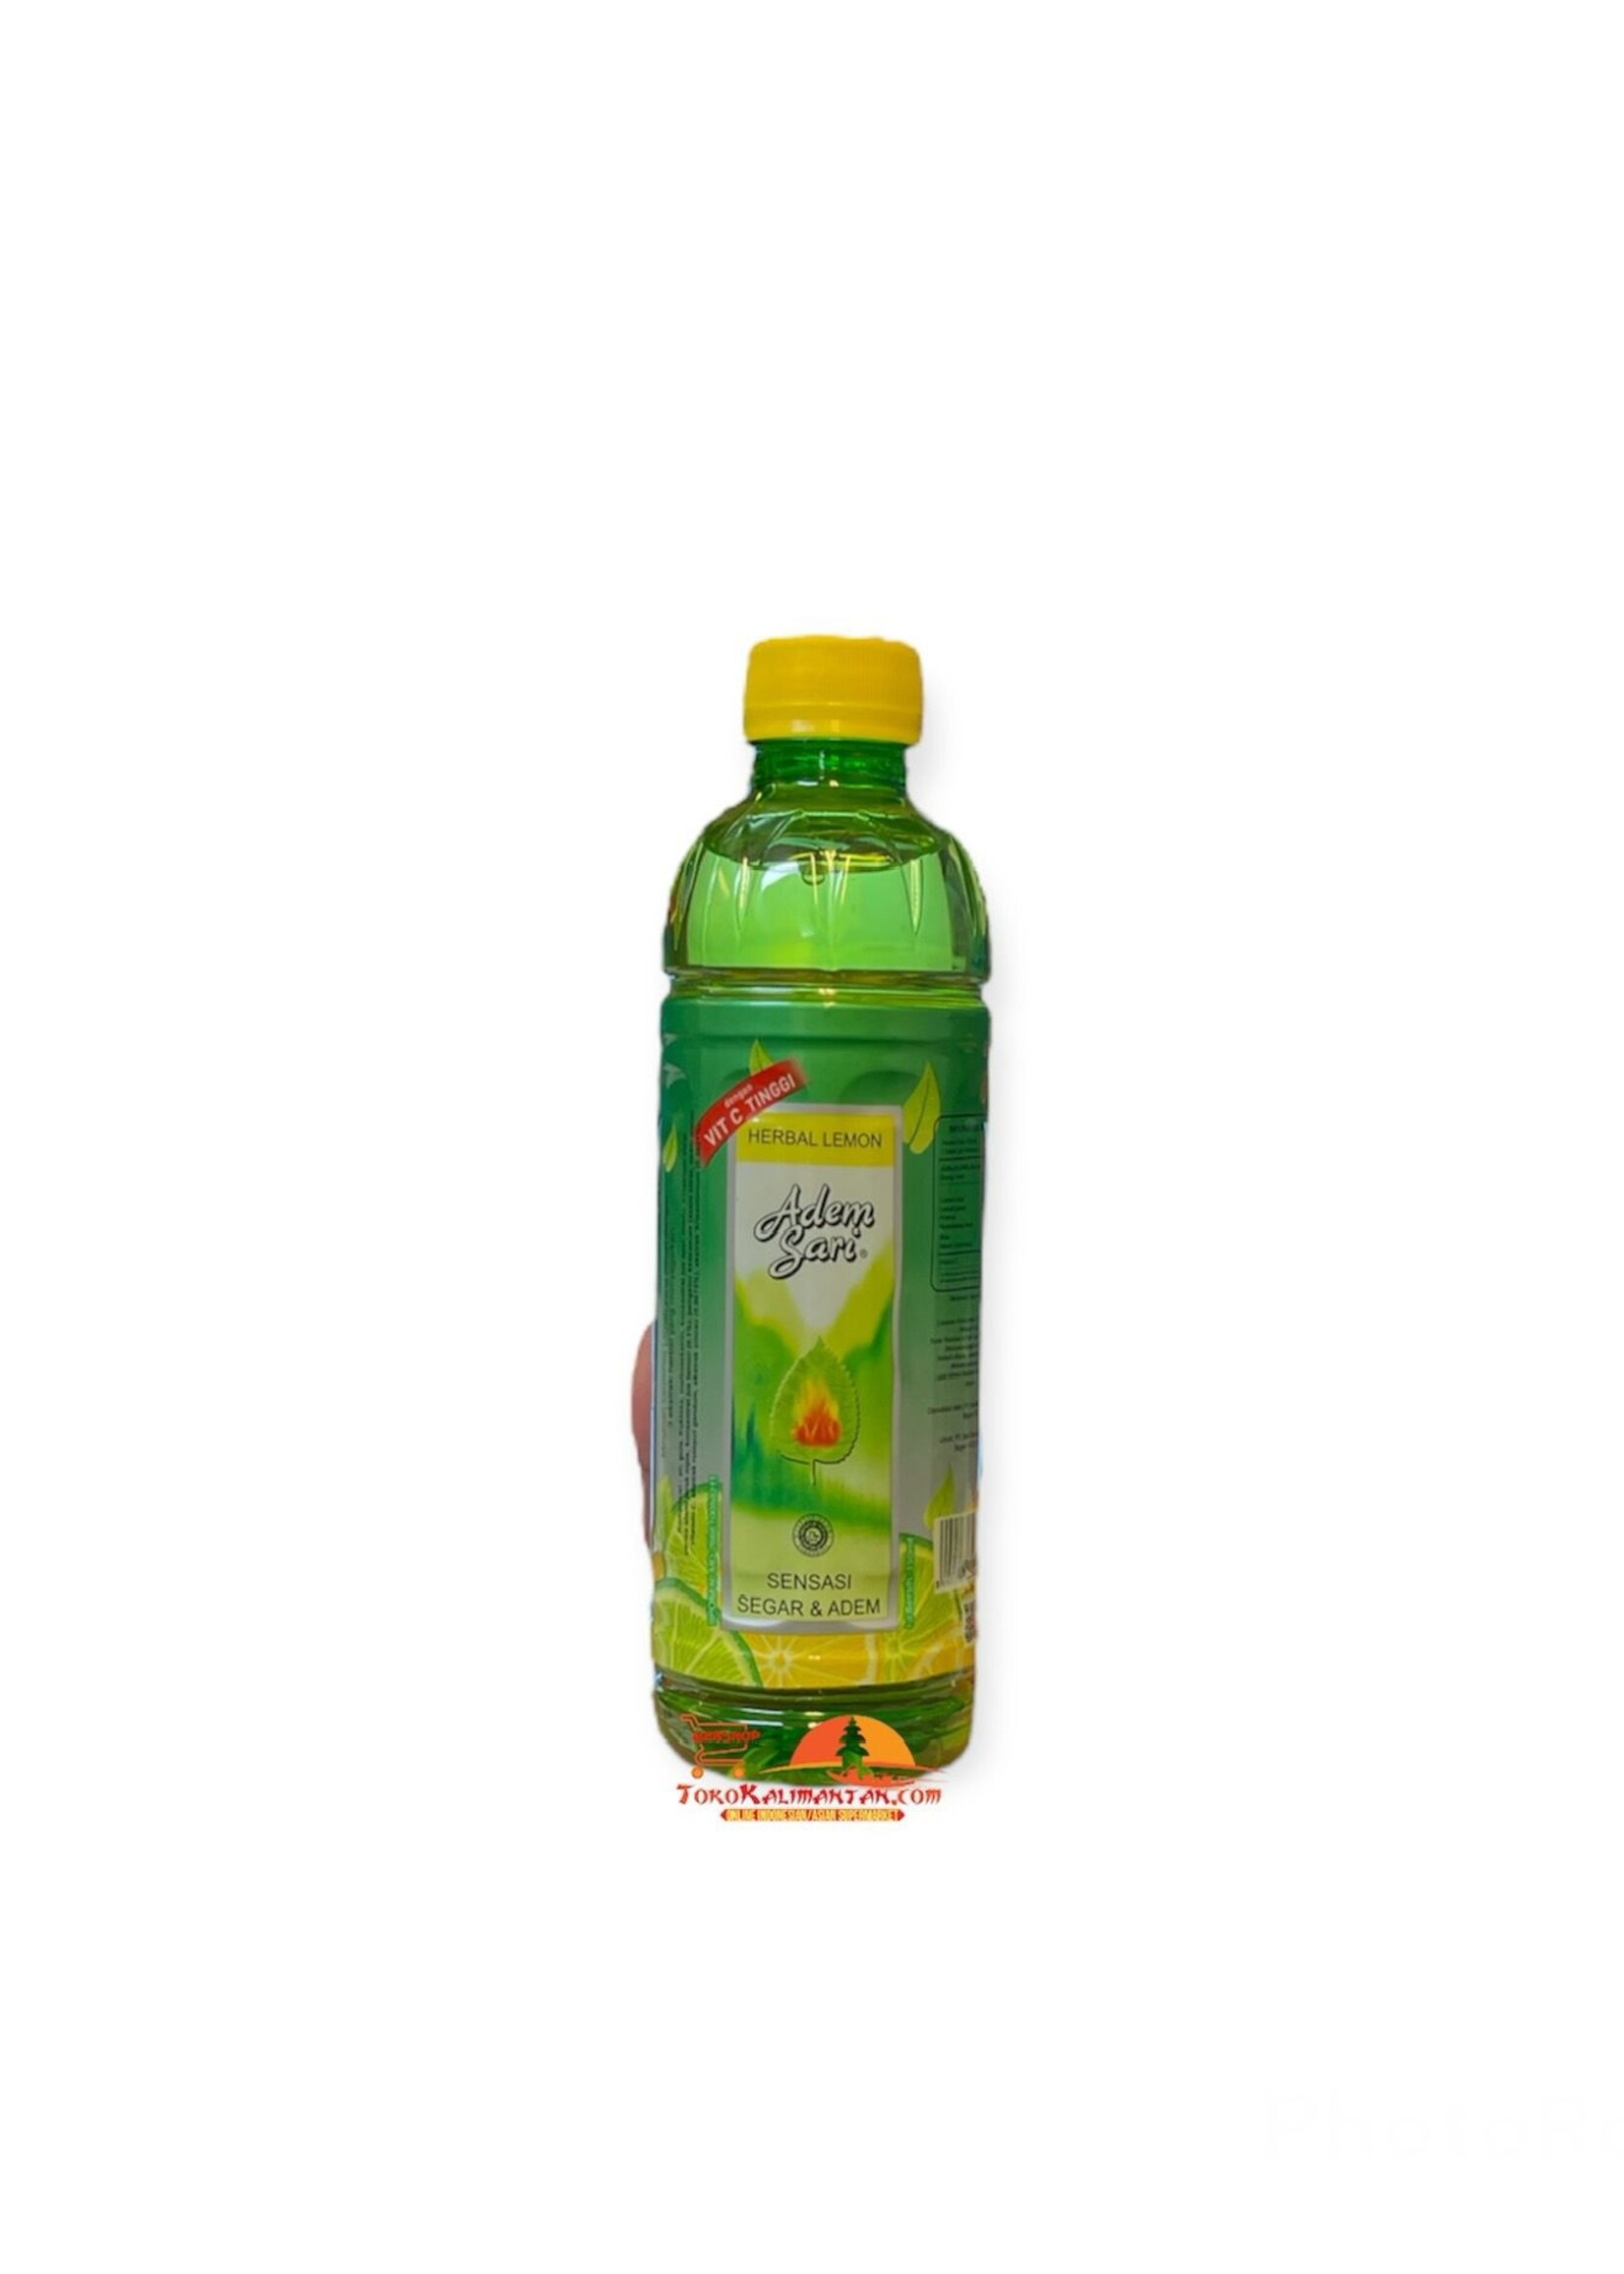 Adem Sari Adem Sari - Herbal Lemon Botol 350ml